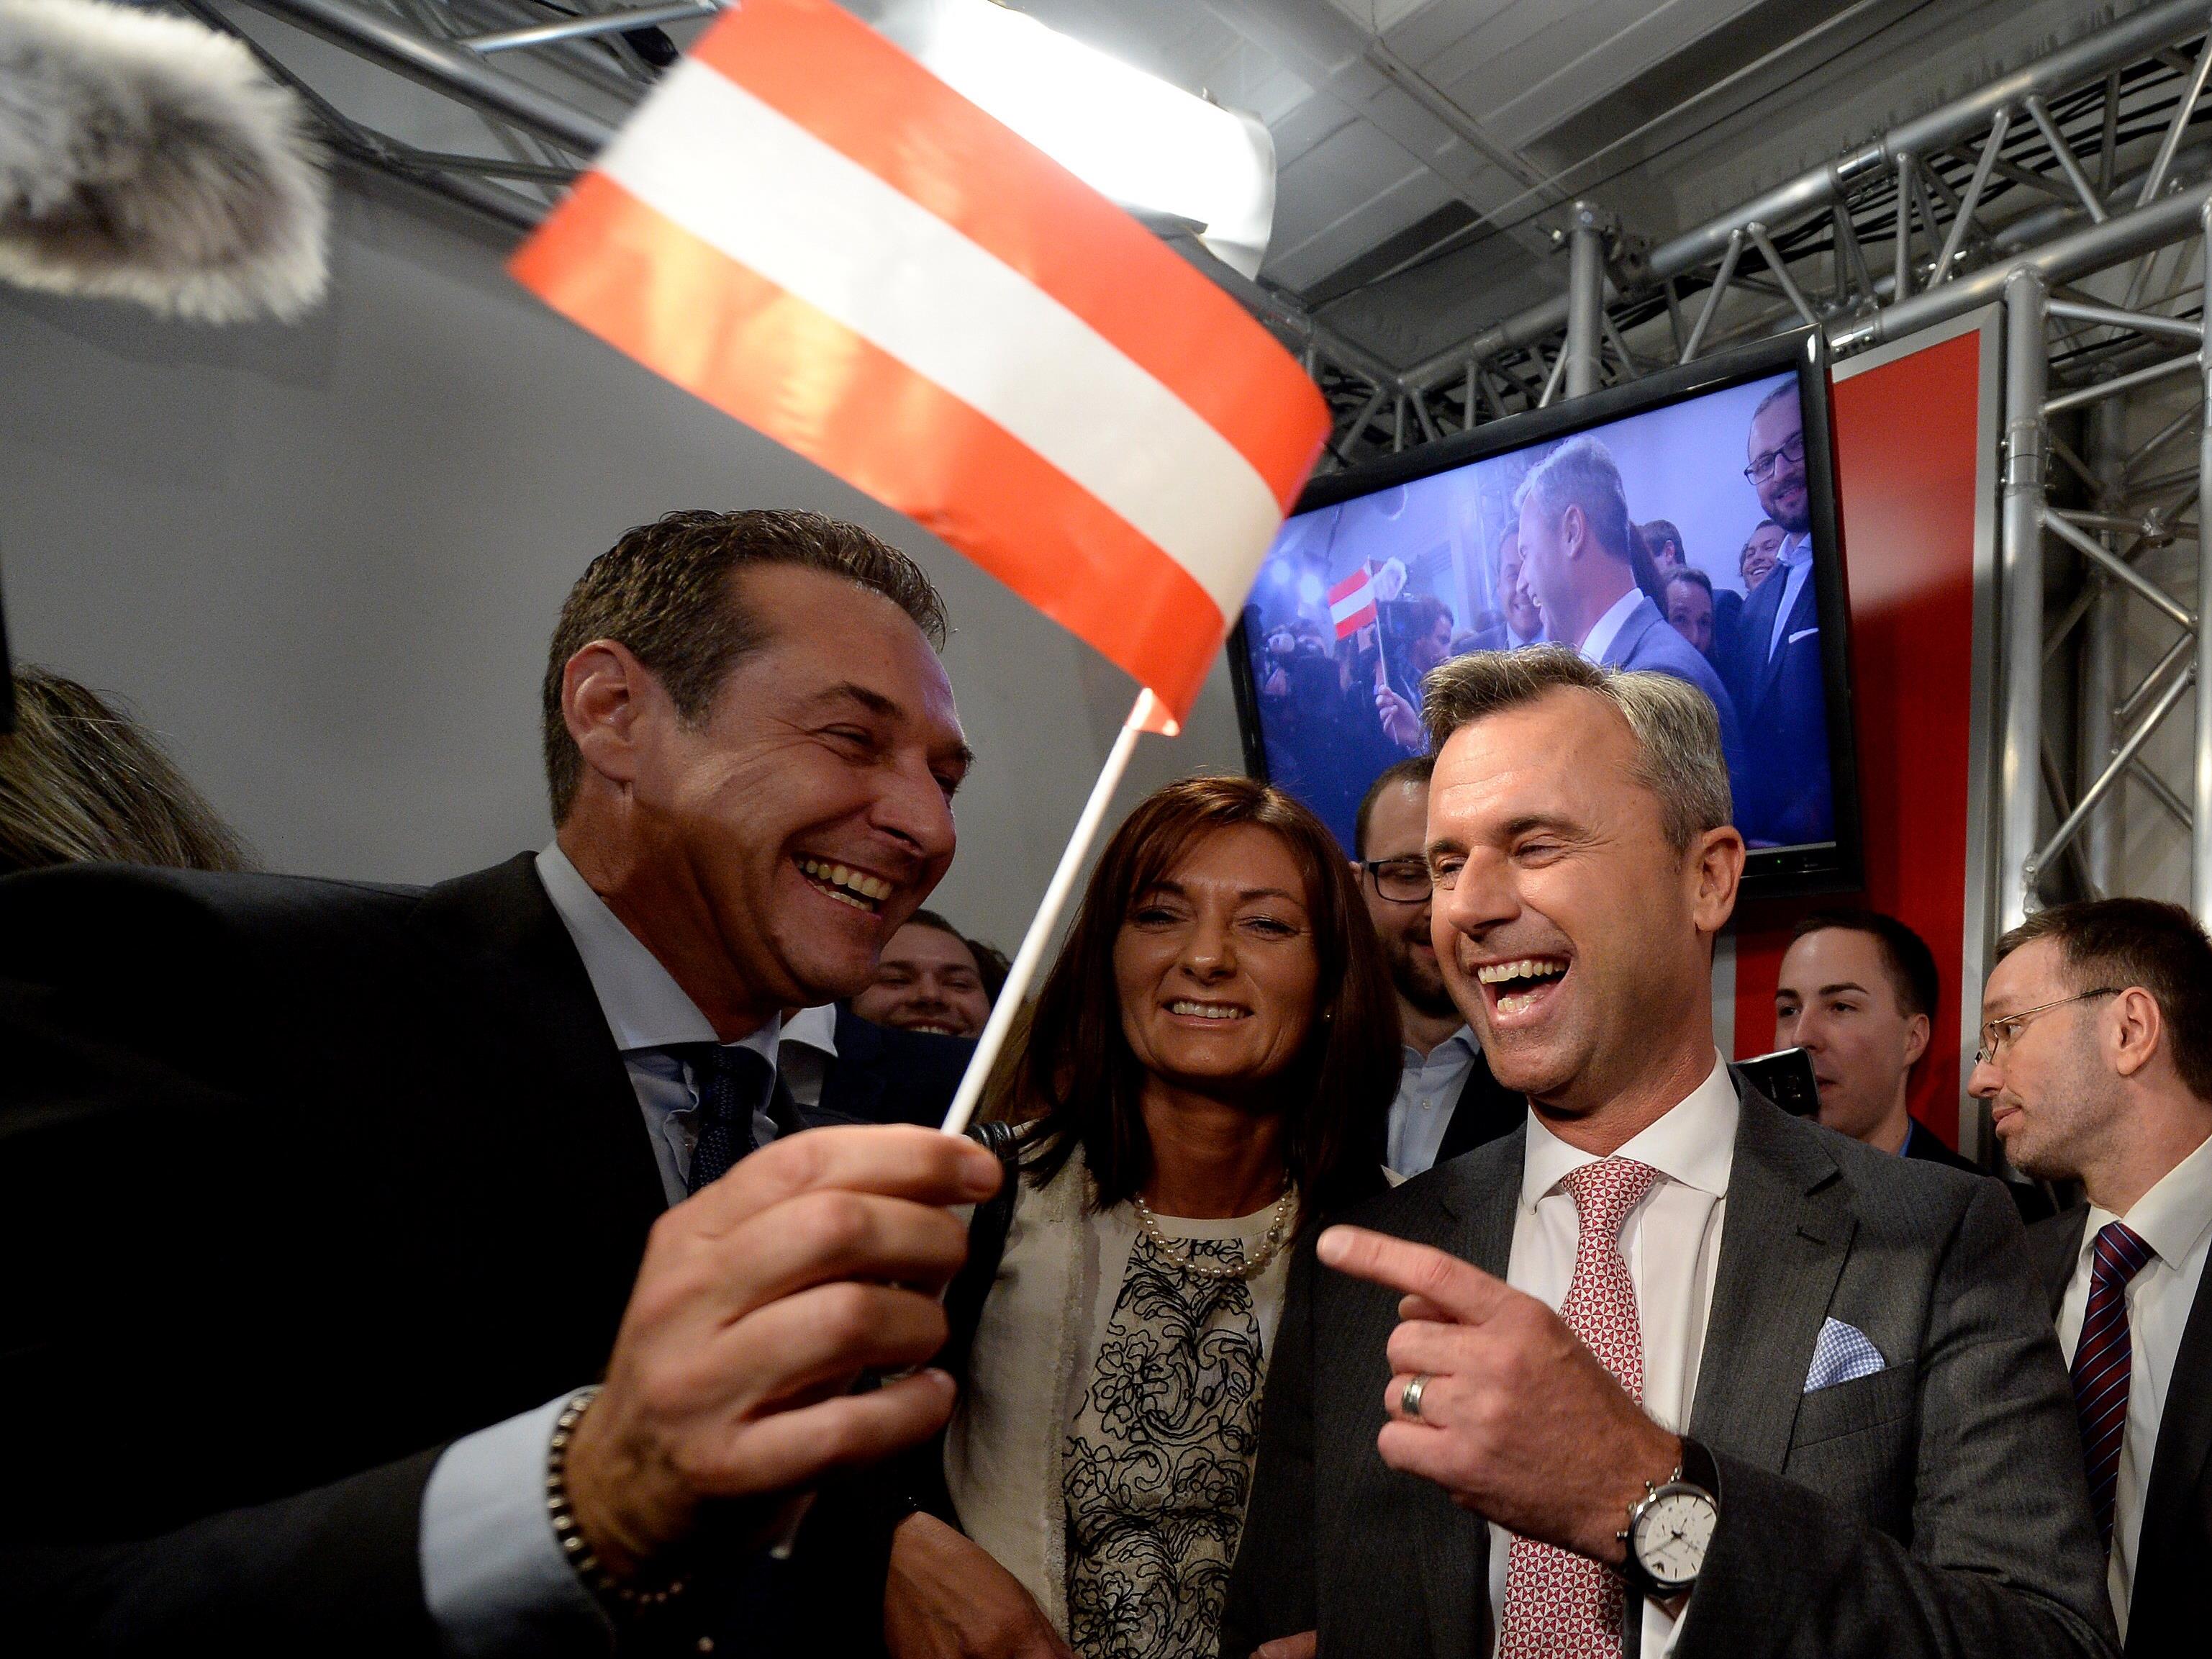 FPÖ-Kandidat Hofer triumphiert bei Vorentscheid zur Bundespräsidentenwahl.